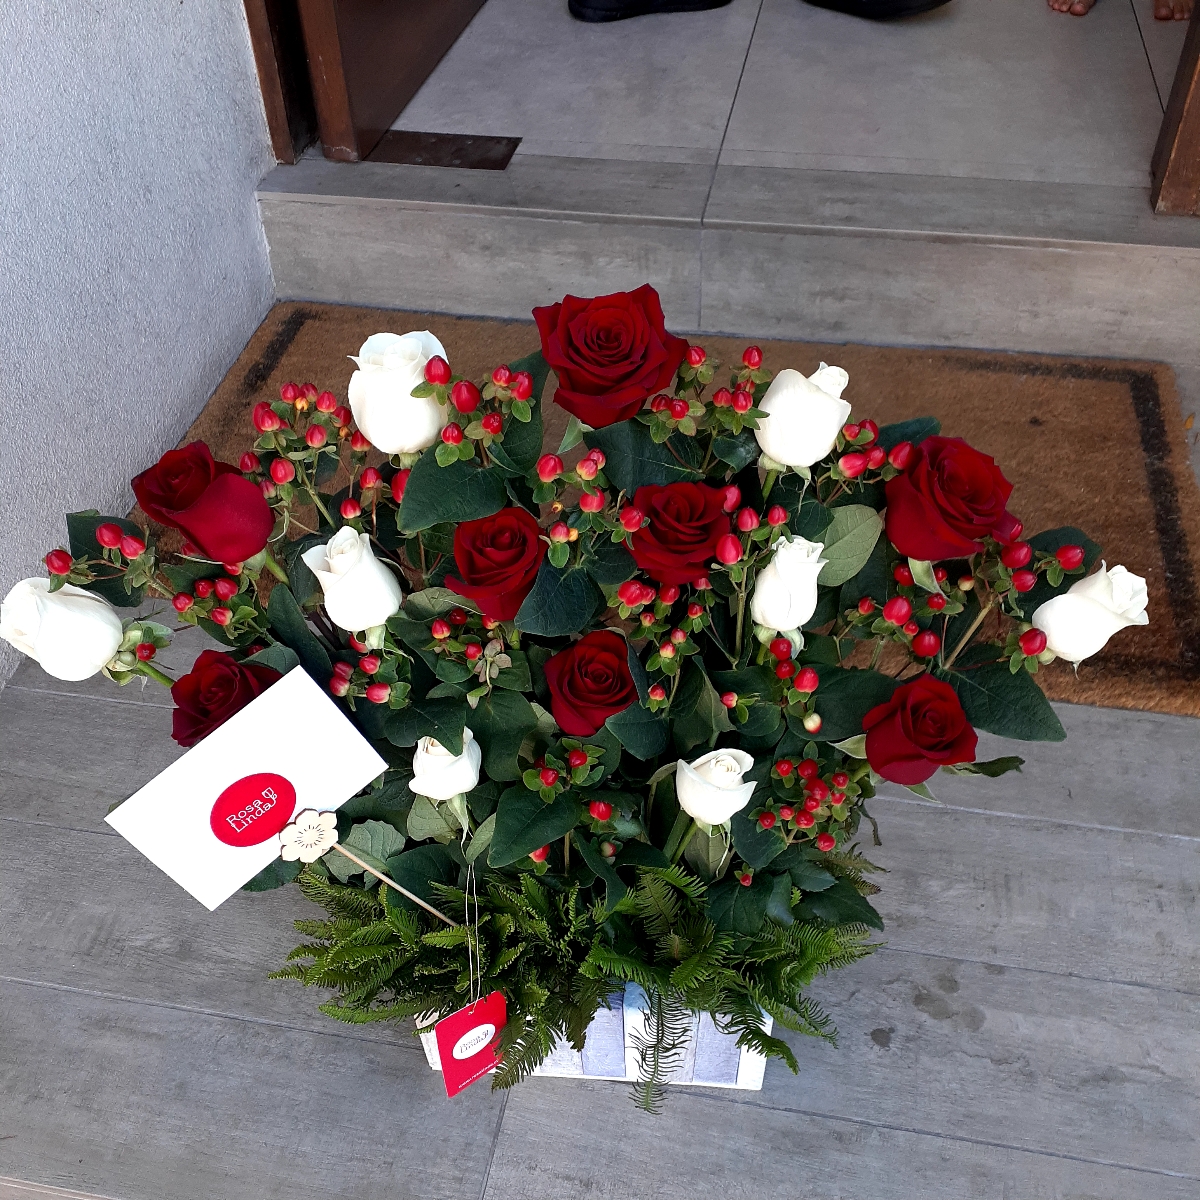 Jardín de Rosas Mix Blanco/Rojo - Arreglo floral con 16 rosas rojas y blancas e hypericum rojo - Pedido 248527